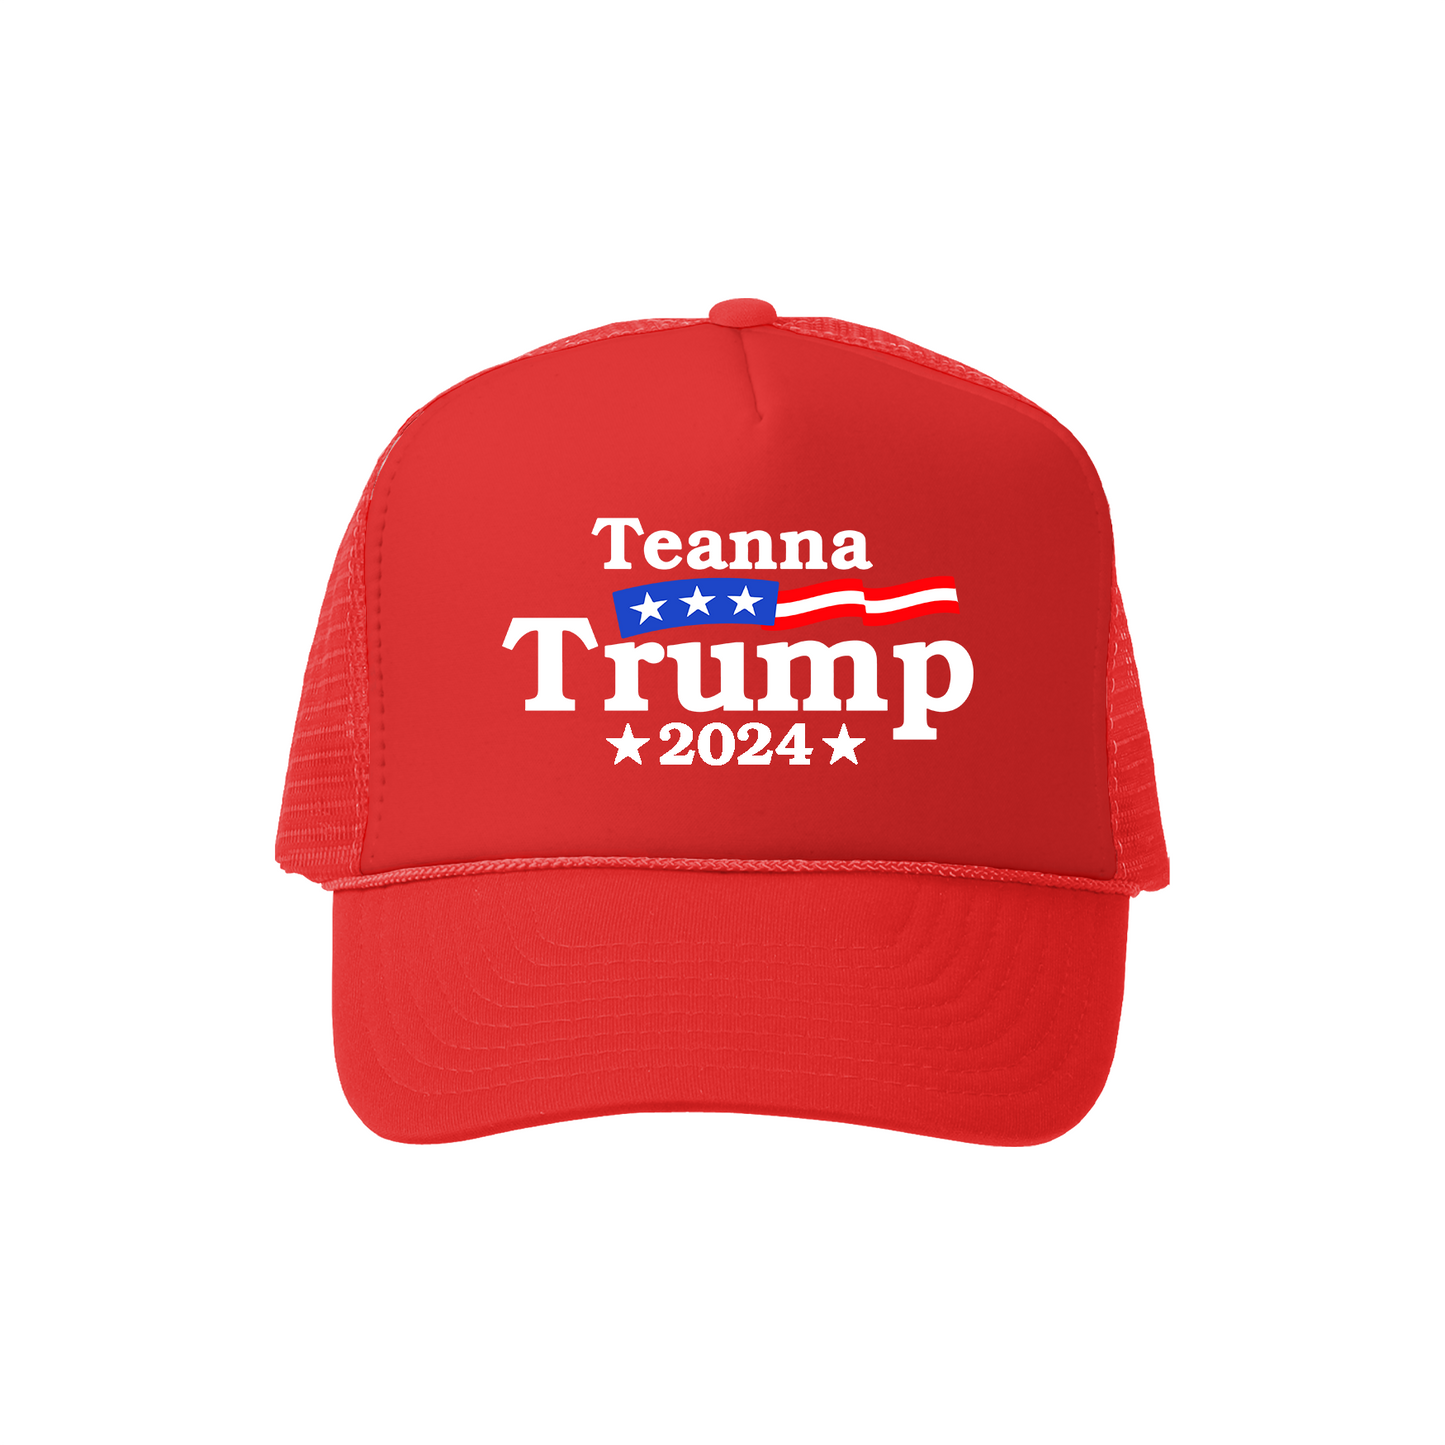 Vote Teanna Trucker Hat - Red